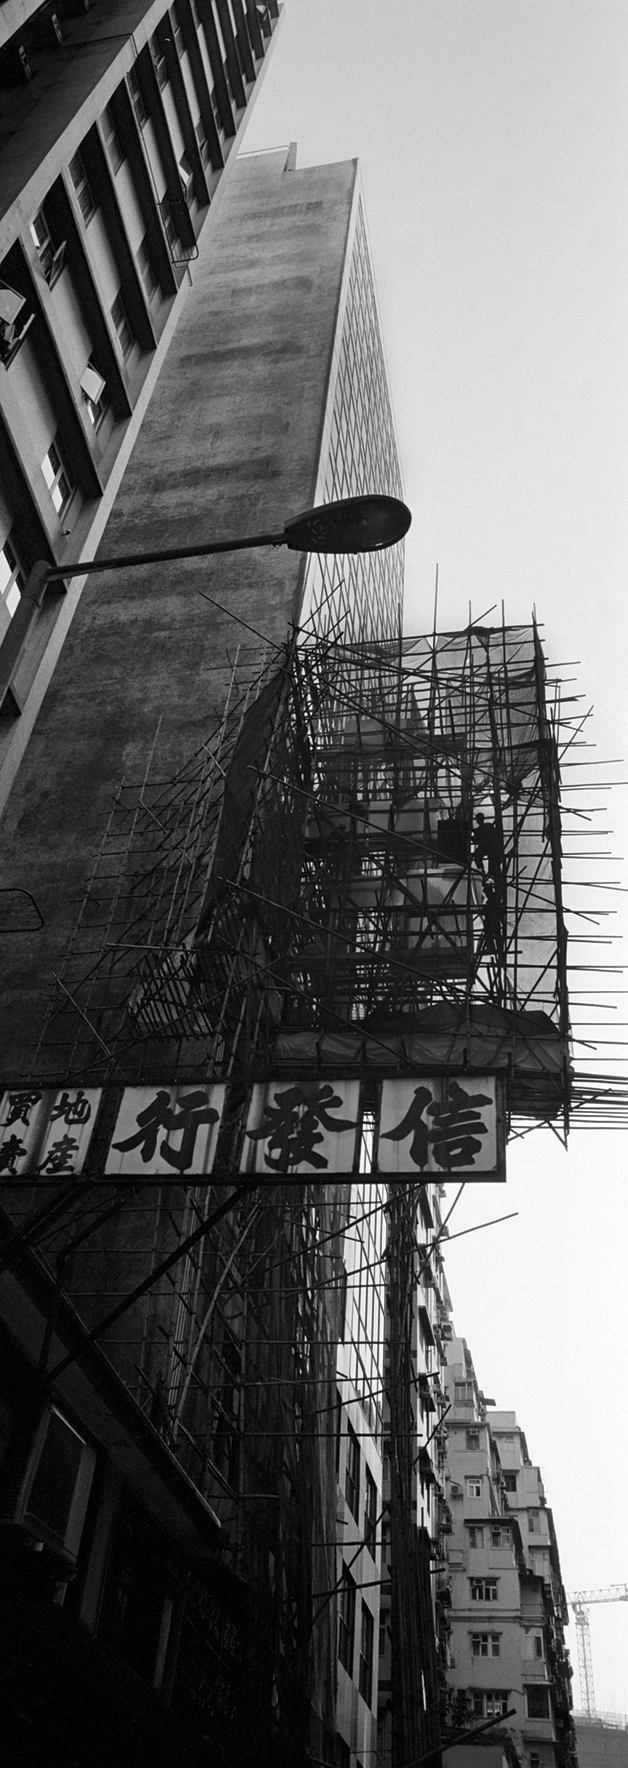  Bamboo cage, Hong Kong. 2015 